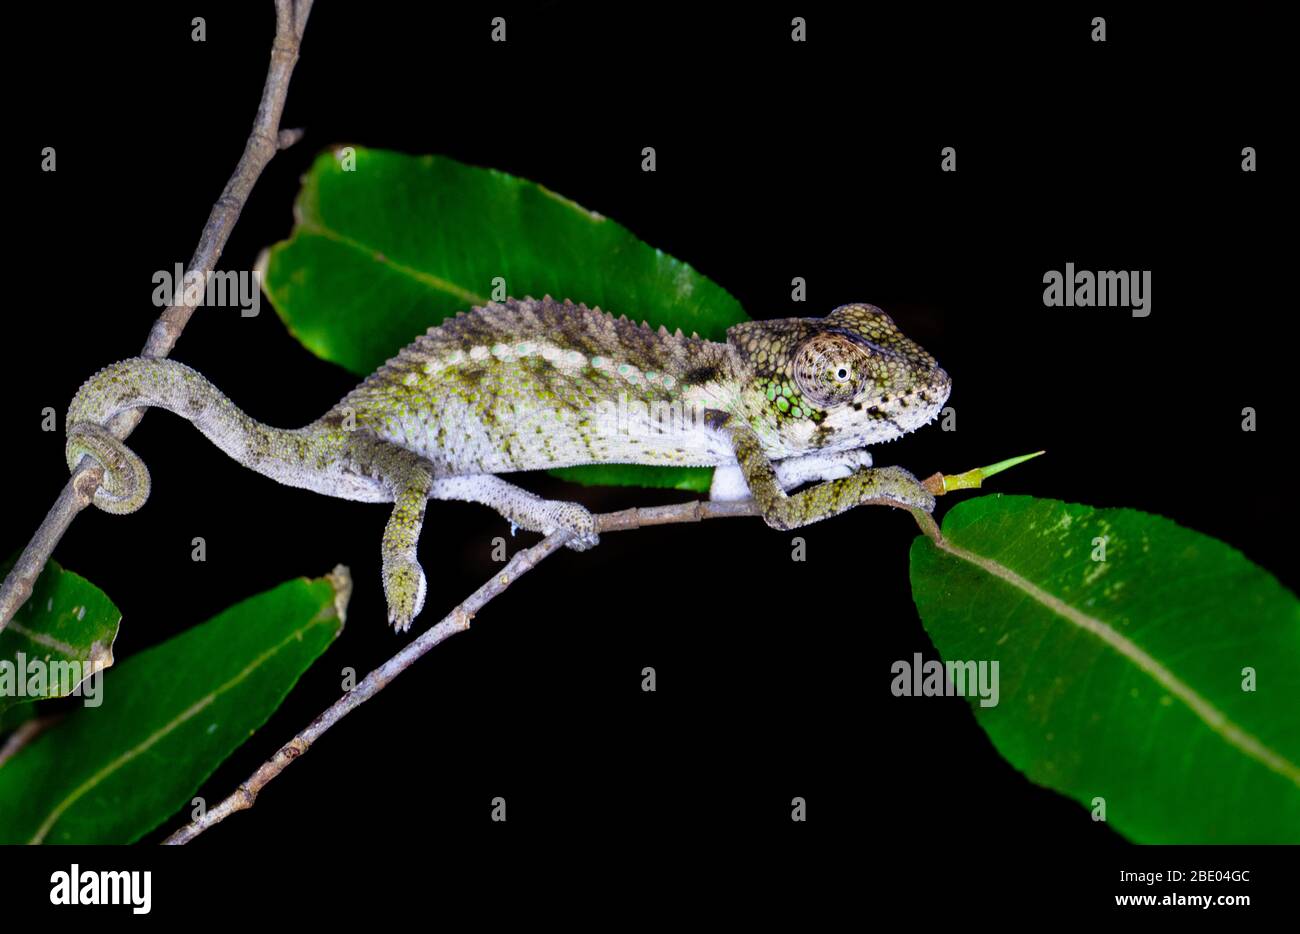 Spiny chameleon (Furcifer verrucosus) on twig, Madagascar Stock Photo